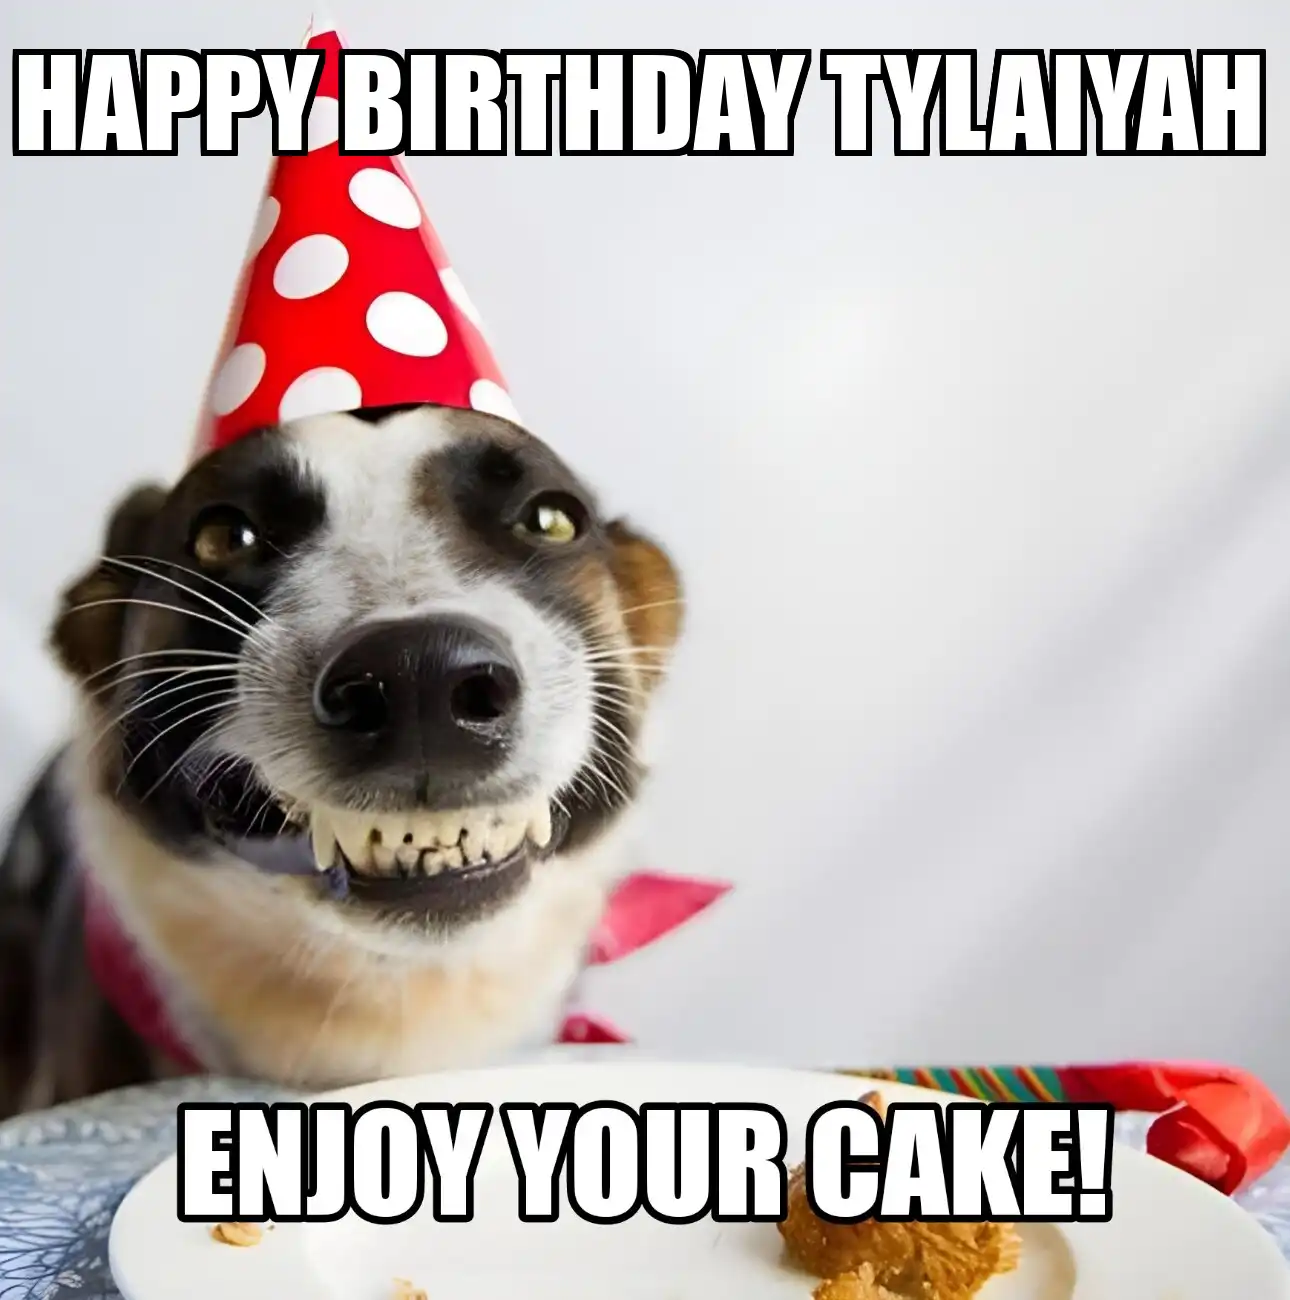 Happy Birthday Tylaiyah Enjoy Your Cake Dog Meme